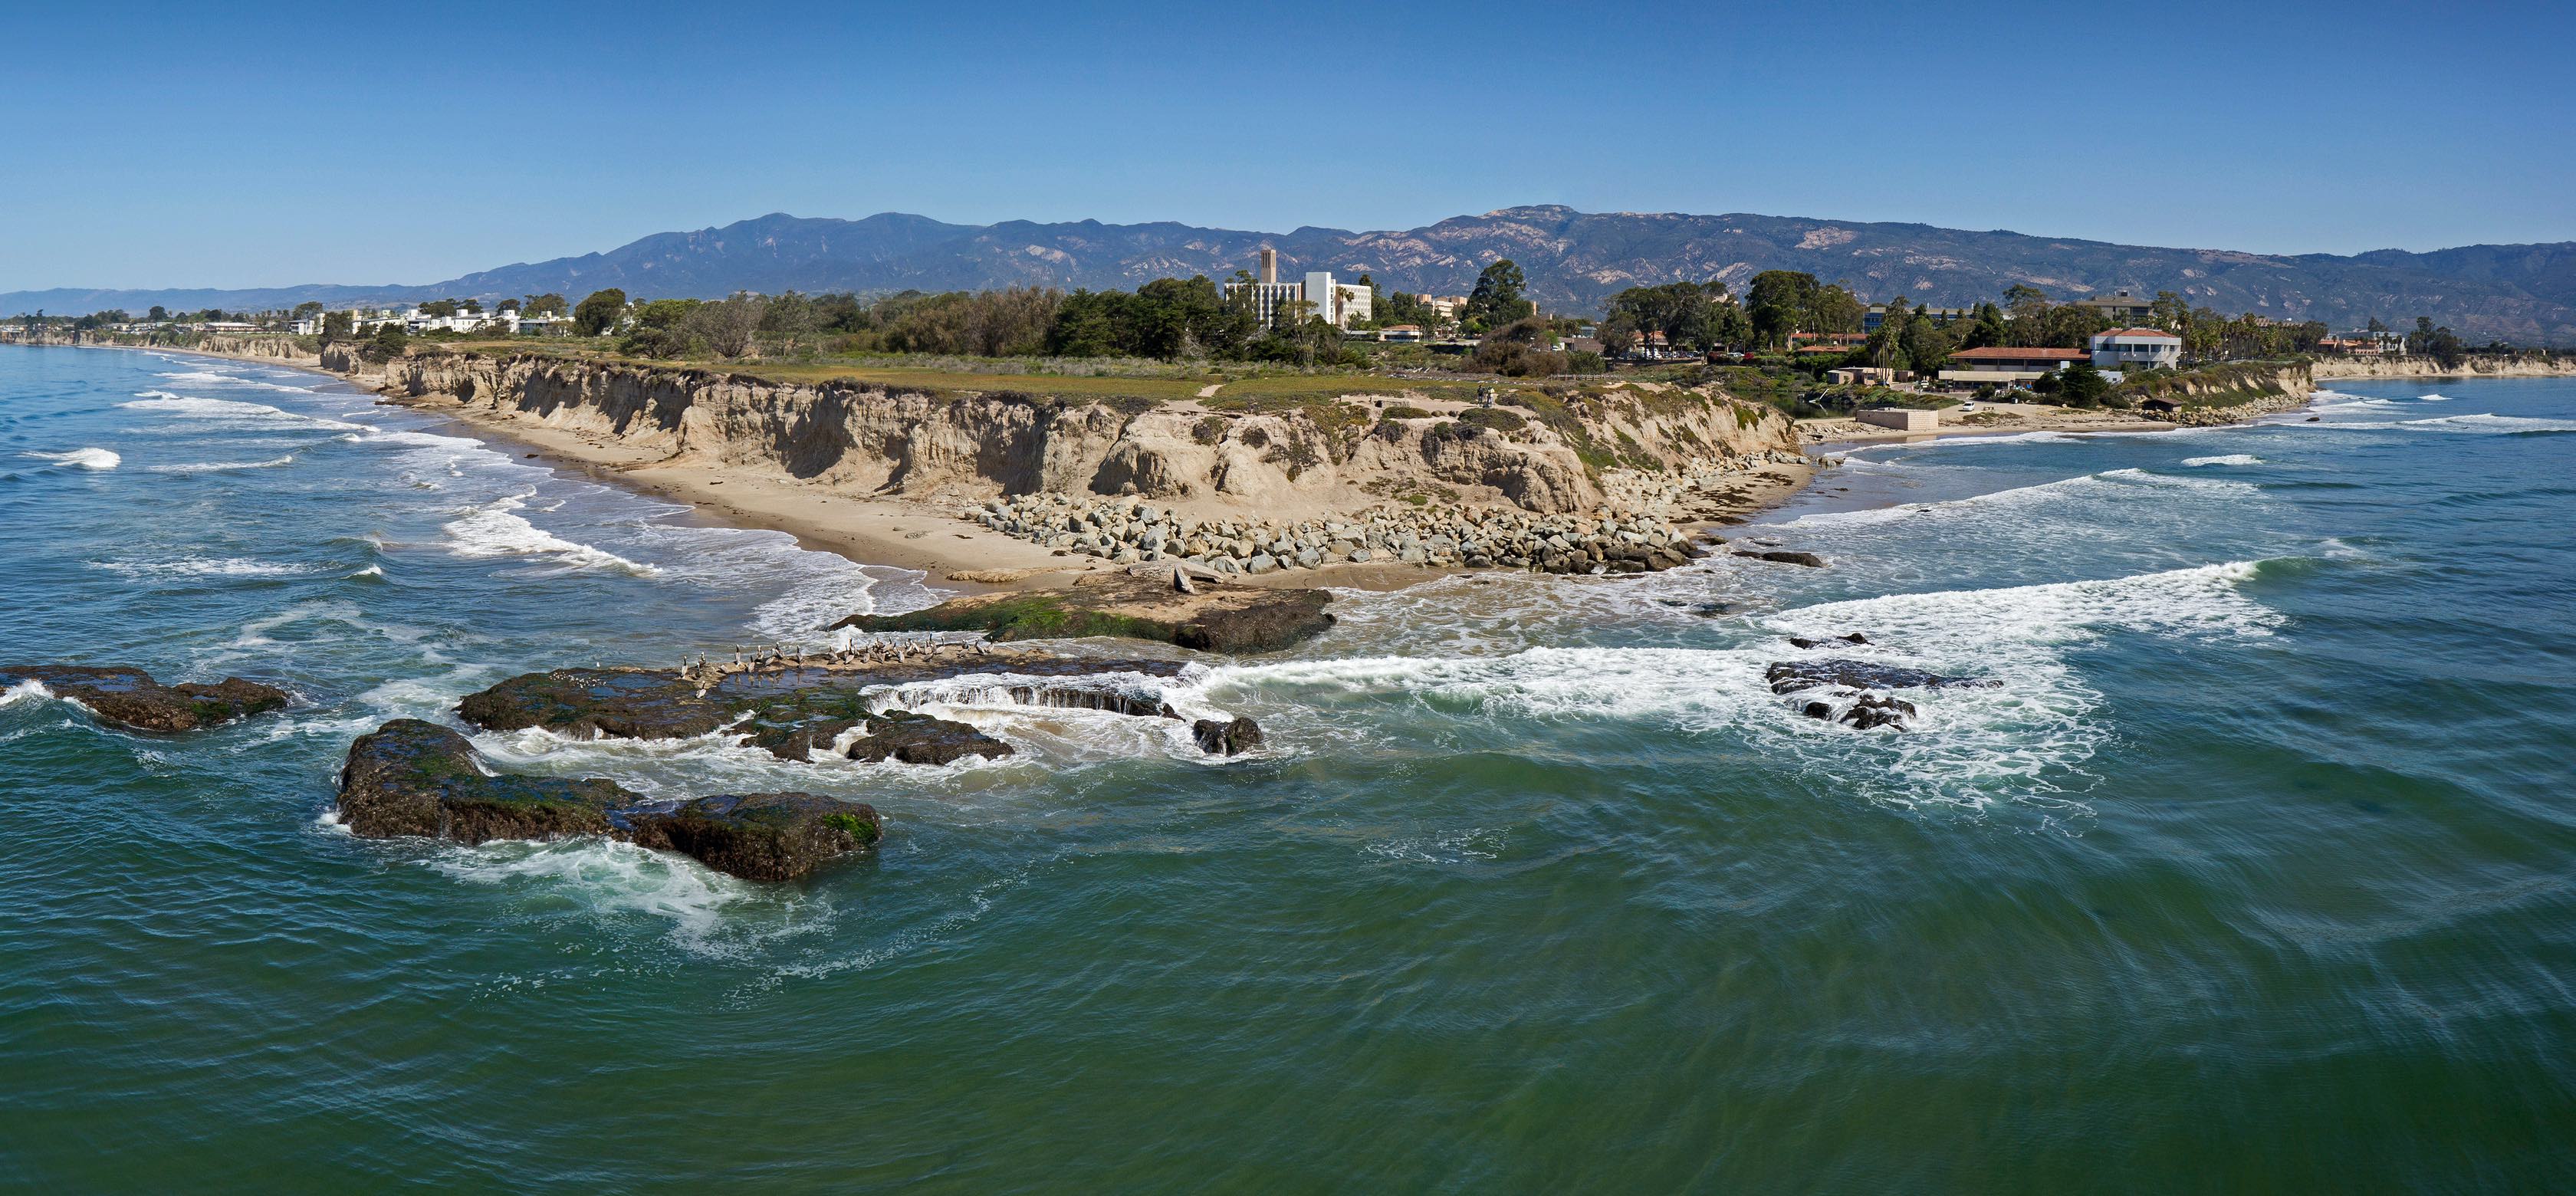 Study by the Beach: International Programs at UC Santa Barbara